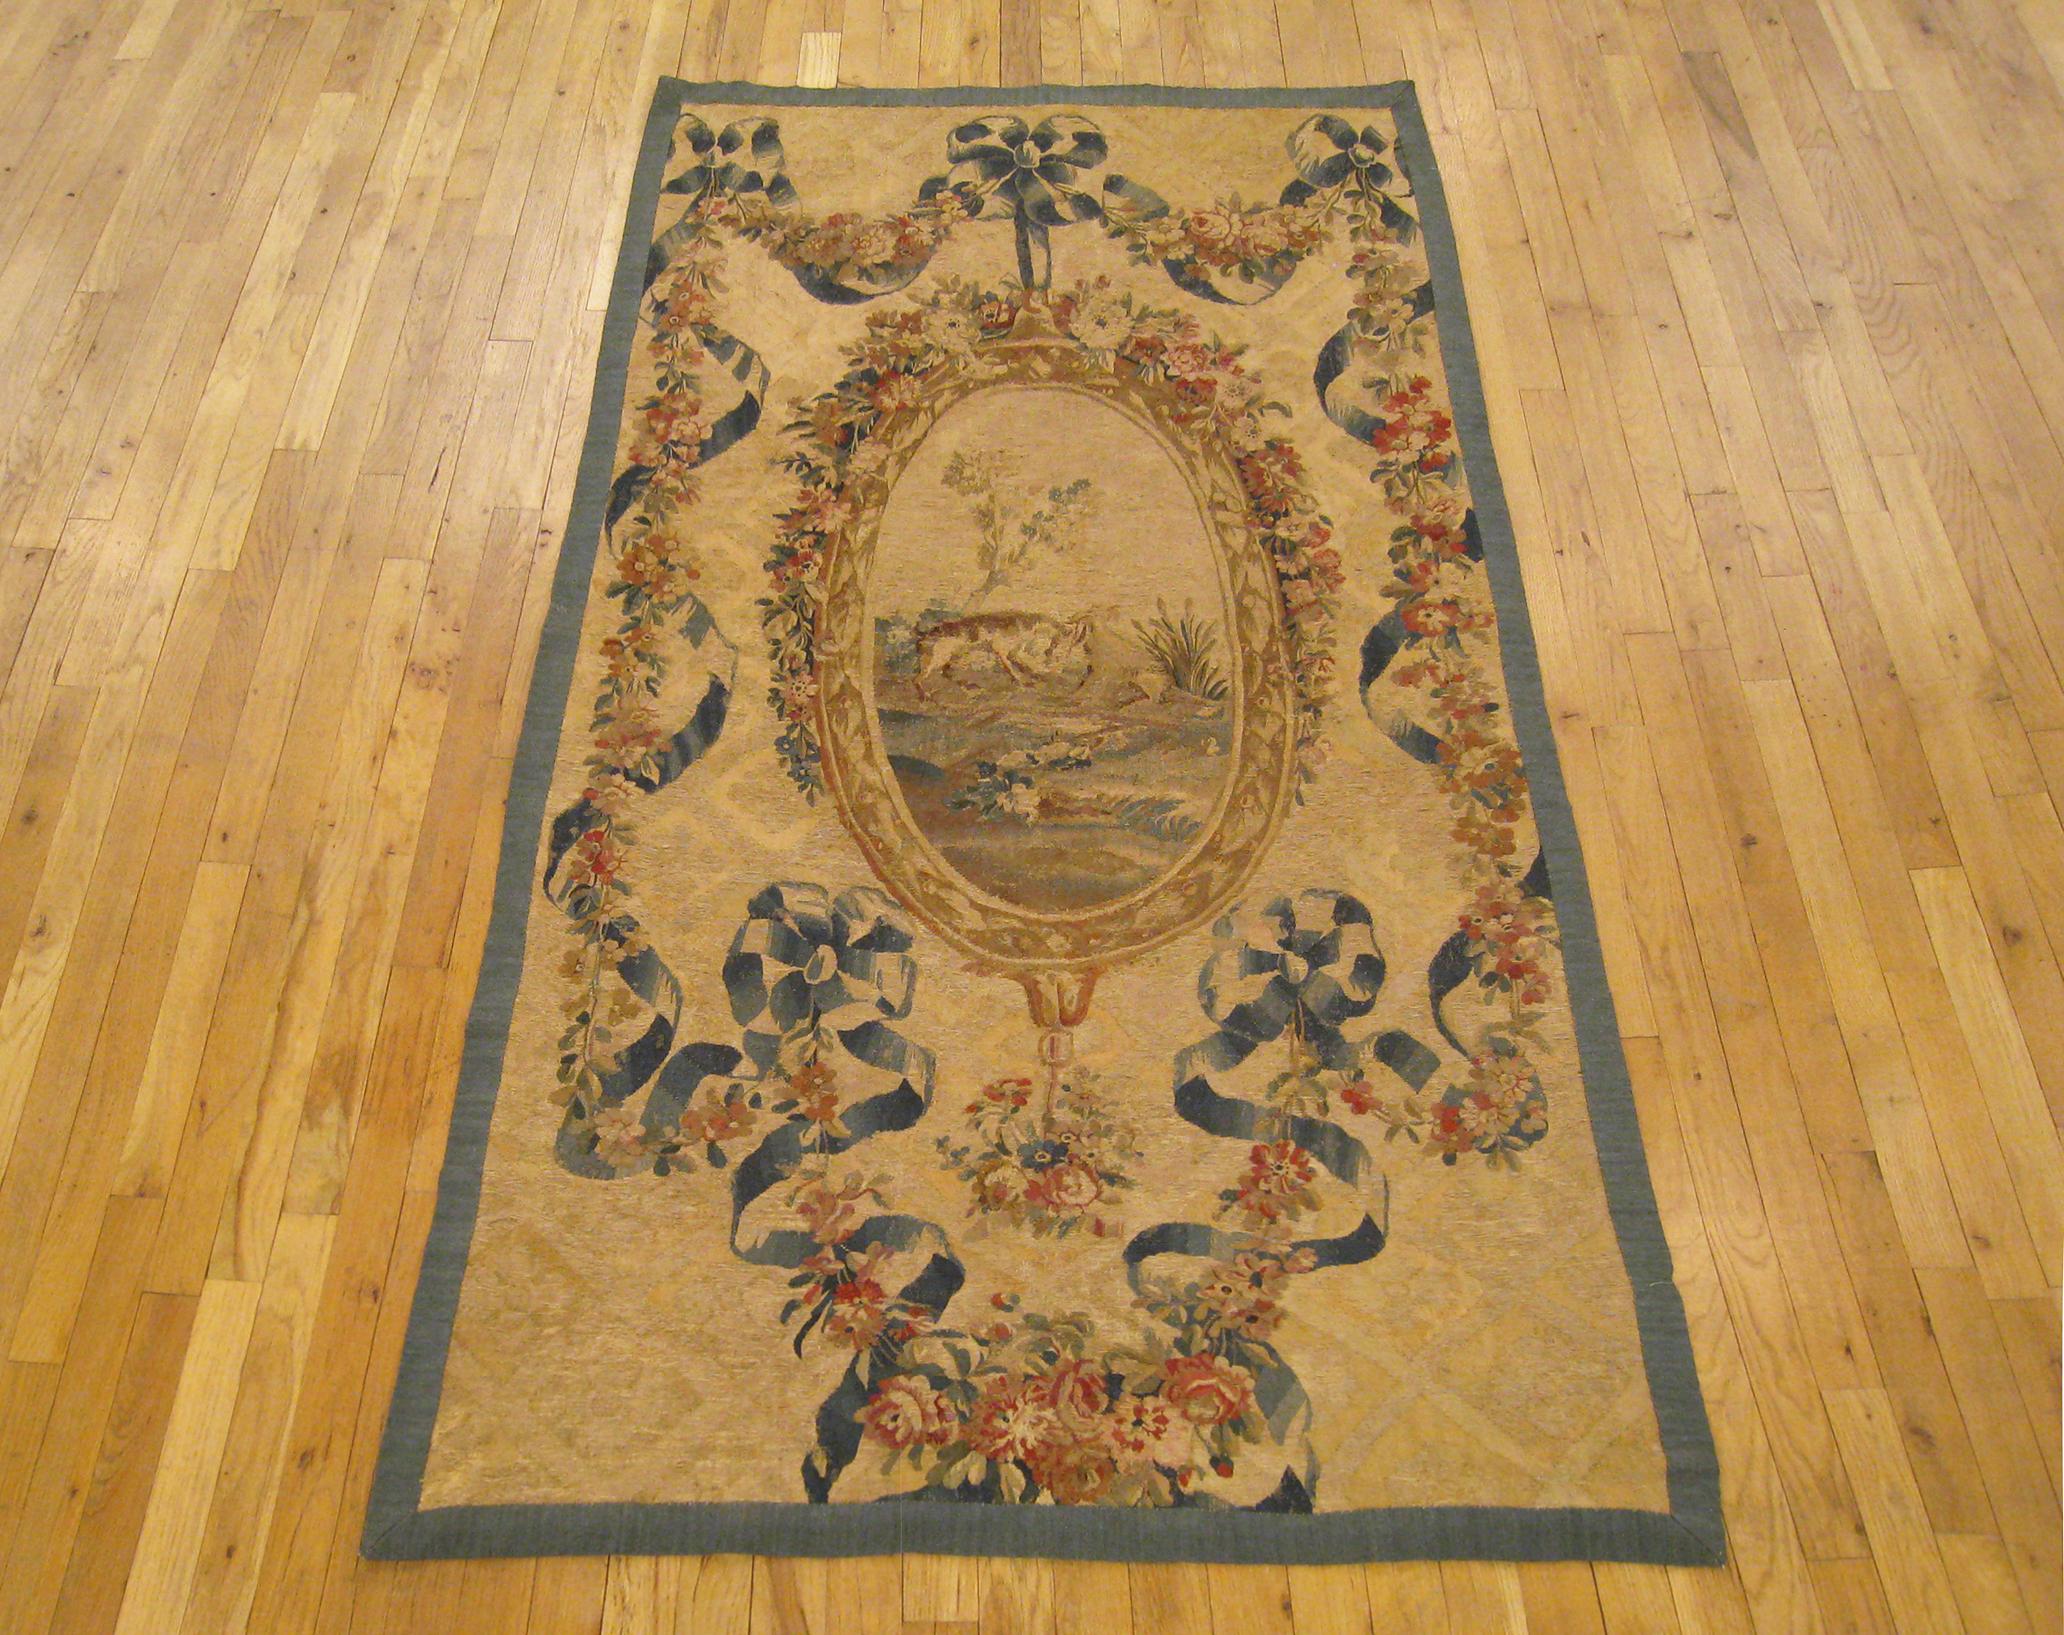 Ancienne tapisserie à l'aiguille française d'Aubusson datant du XIXe siècle. Au centre, un pendentif ovale évoque un paysage idyllique. Le médaillon du pendentif est entouré de guirlandes florales et de rubans, avec des couleurs douces en